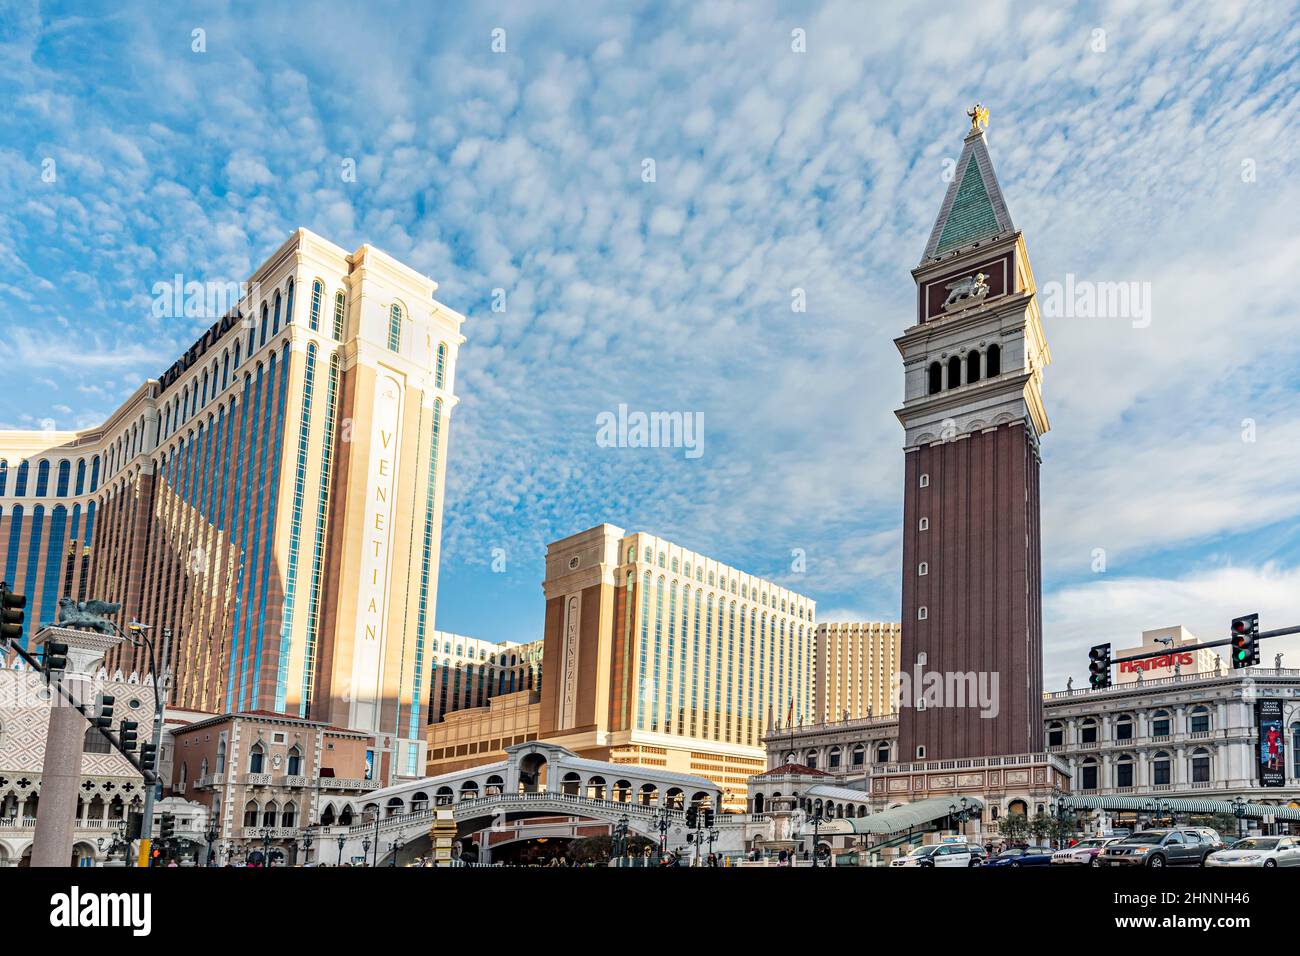 Die Menschen besuchen das Casino The Venetian in Las Vegas. Das Casino lockt mit Nachbildungen von venezianischen Gebäuden mit Gondel und rialtobrücke. Stockfoto